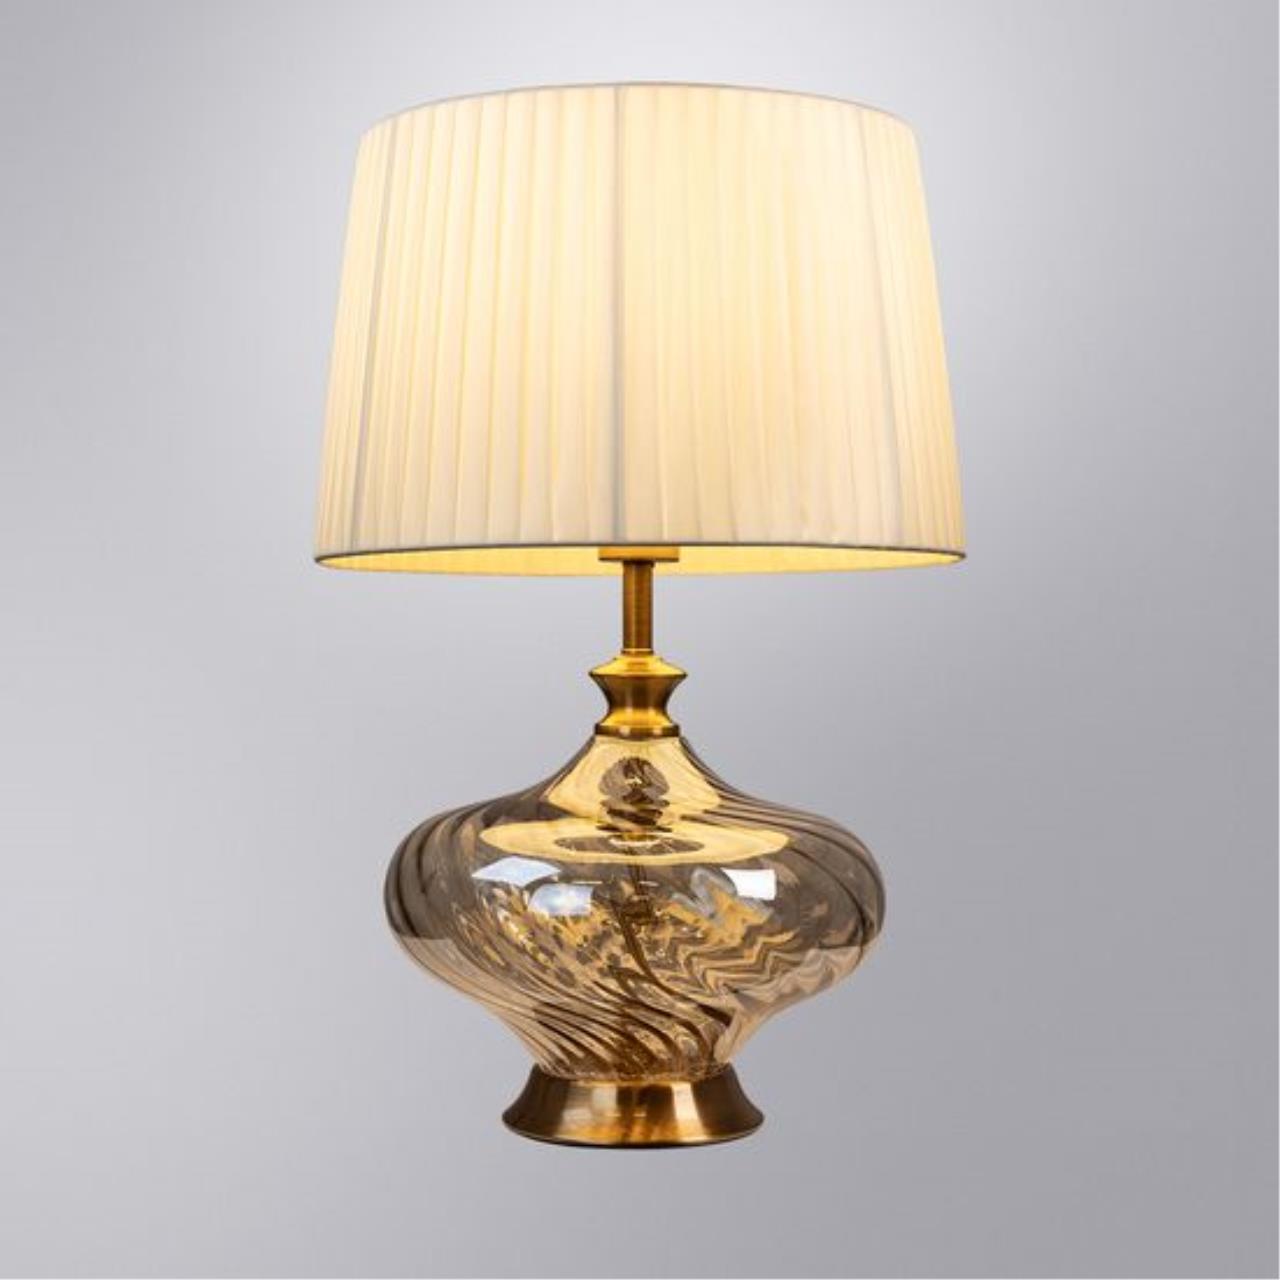 Интерьерная настольная лампа Arte lamp A5044LT-1PB